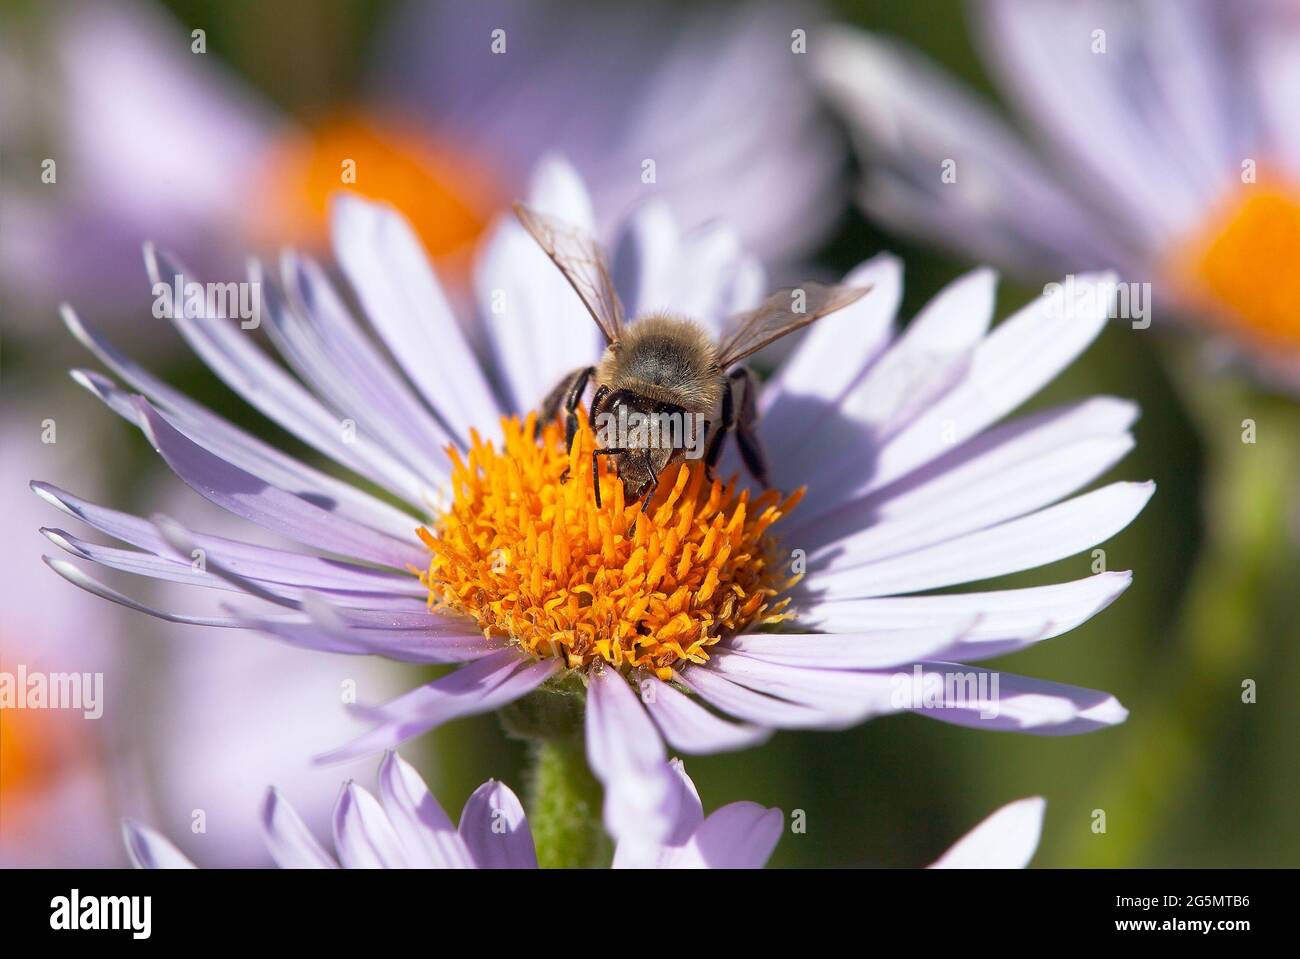 Detail der Biene oder Honigbiene in Latein APIs Mellifera, europäische oder westliche Honigbiene auf der violetten oder blauen Blume sitzend Stockfoto